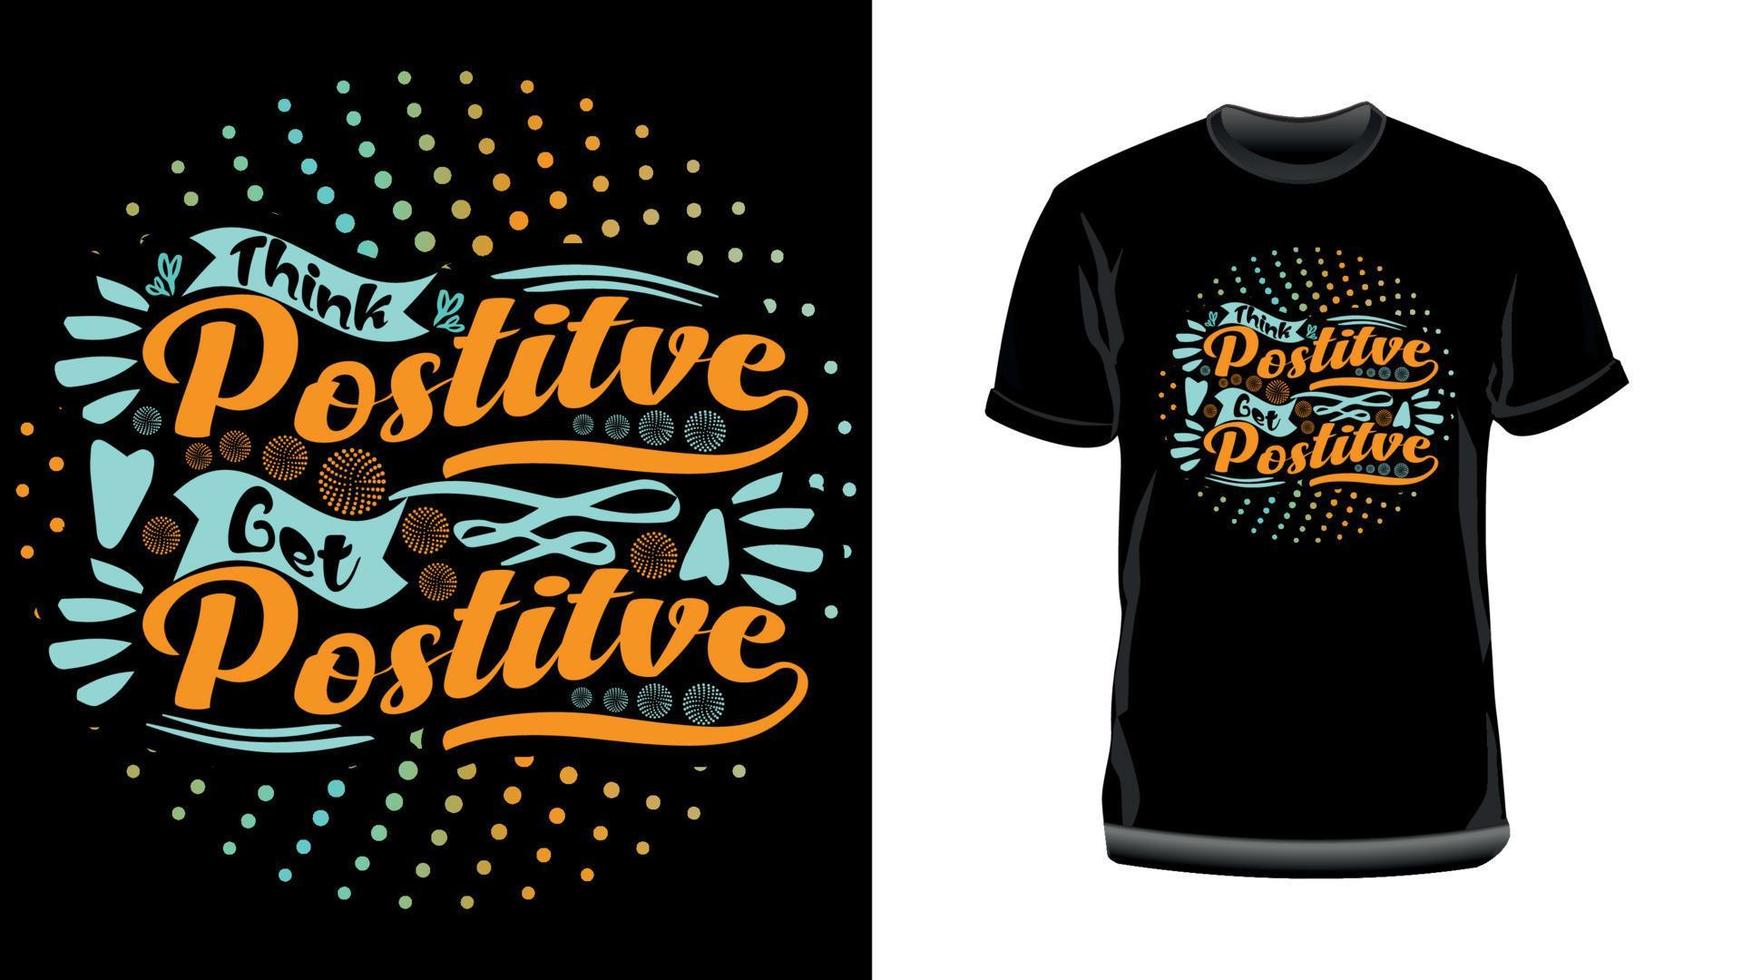 piensa en positivo, sé positivo: diseño de camiseta de tipografía motivacional vector